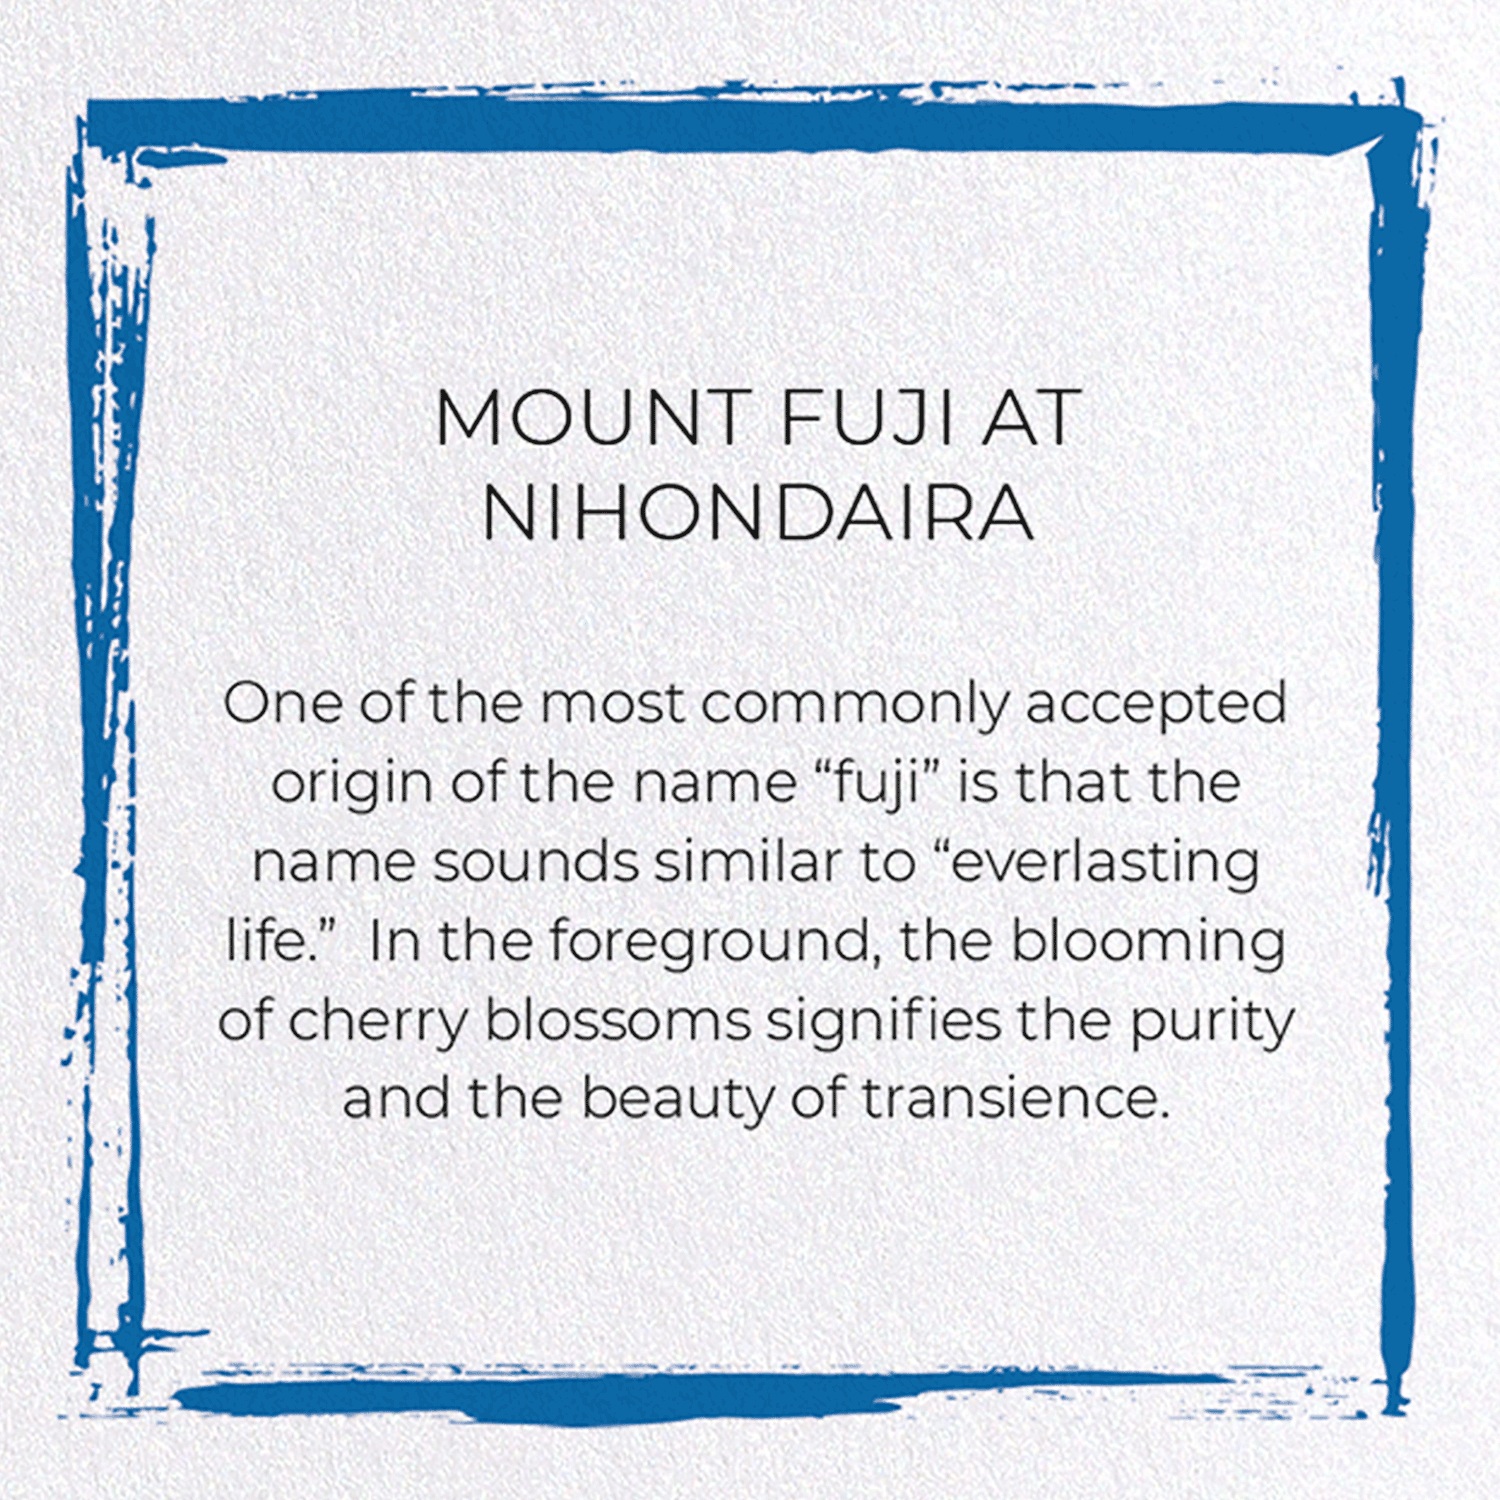 MOUNT FUJI AT NIHONDAIRA